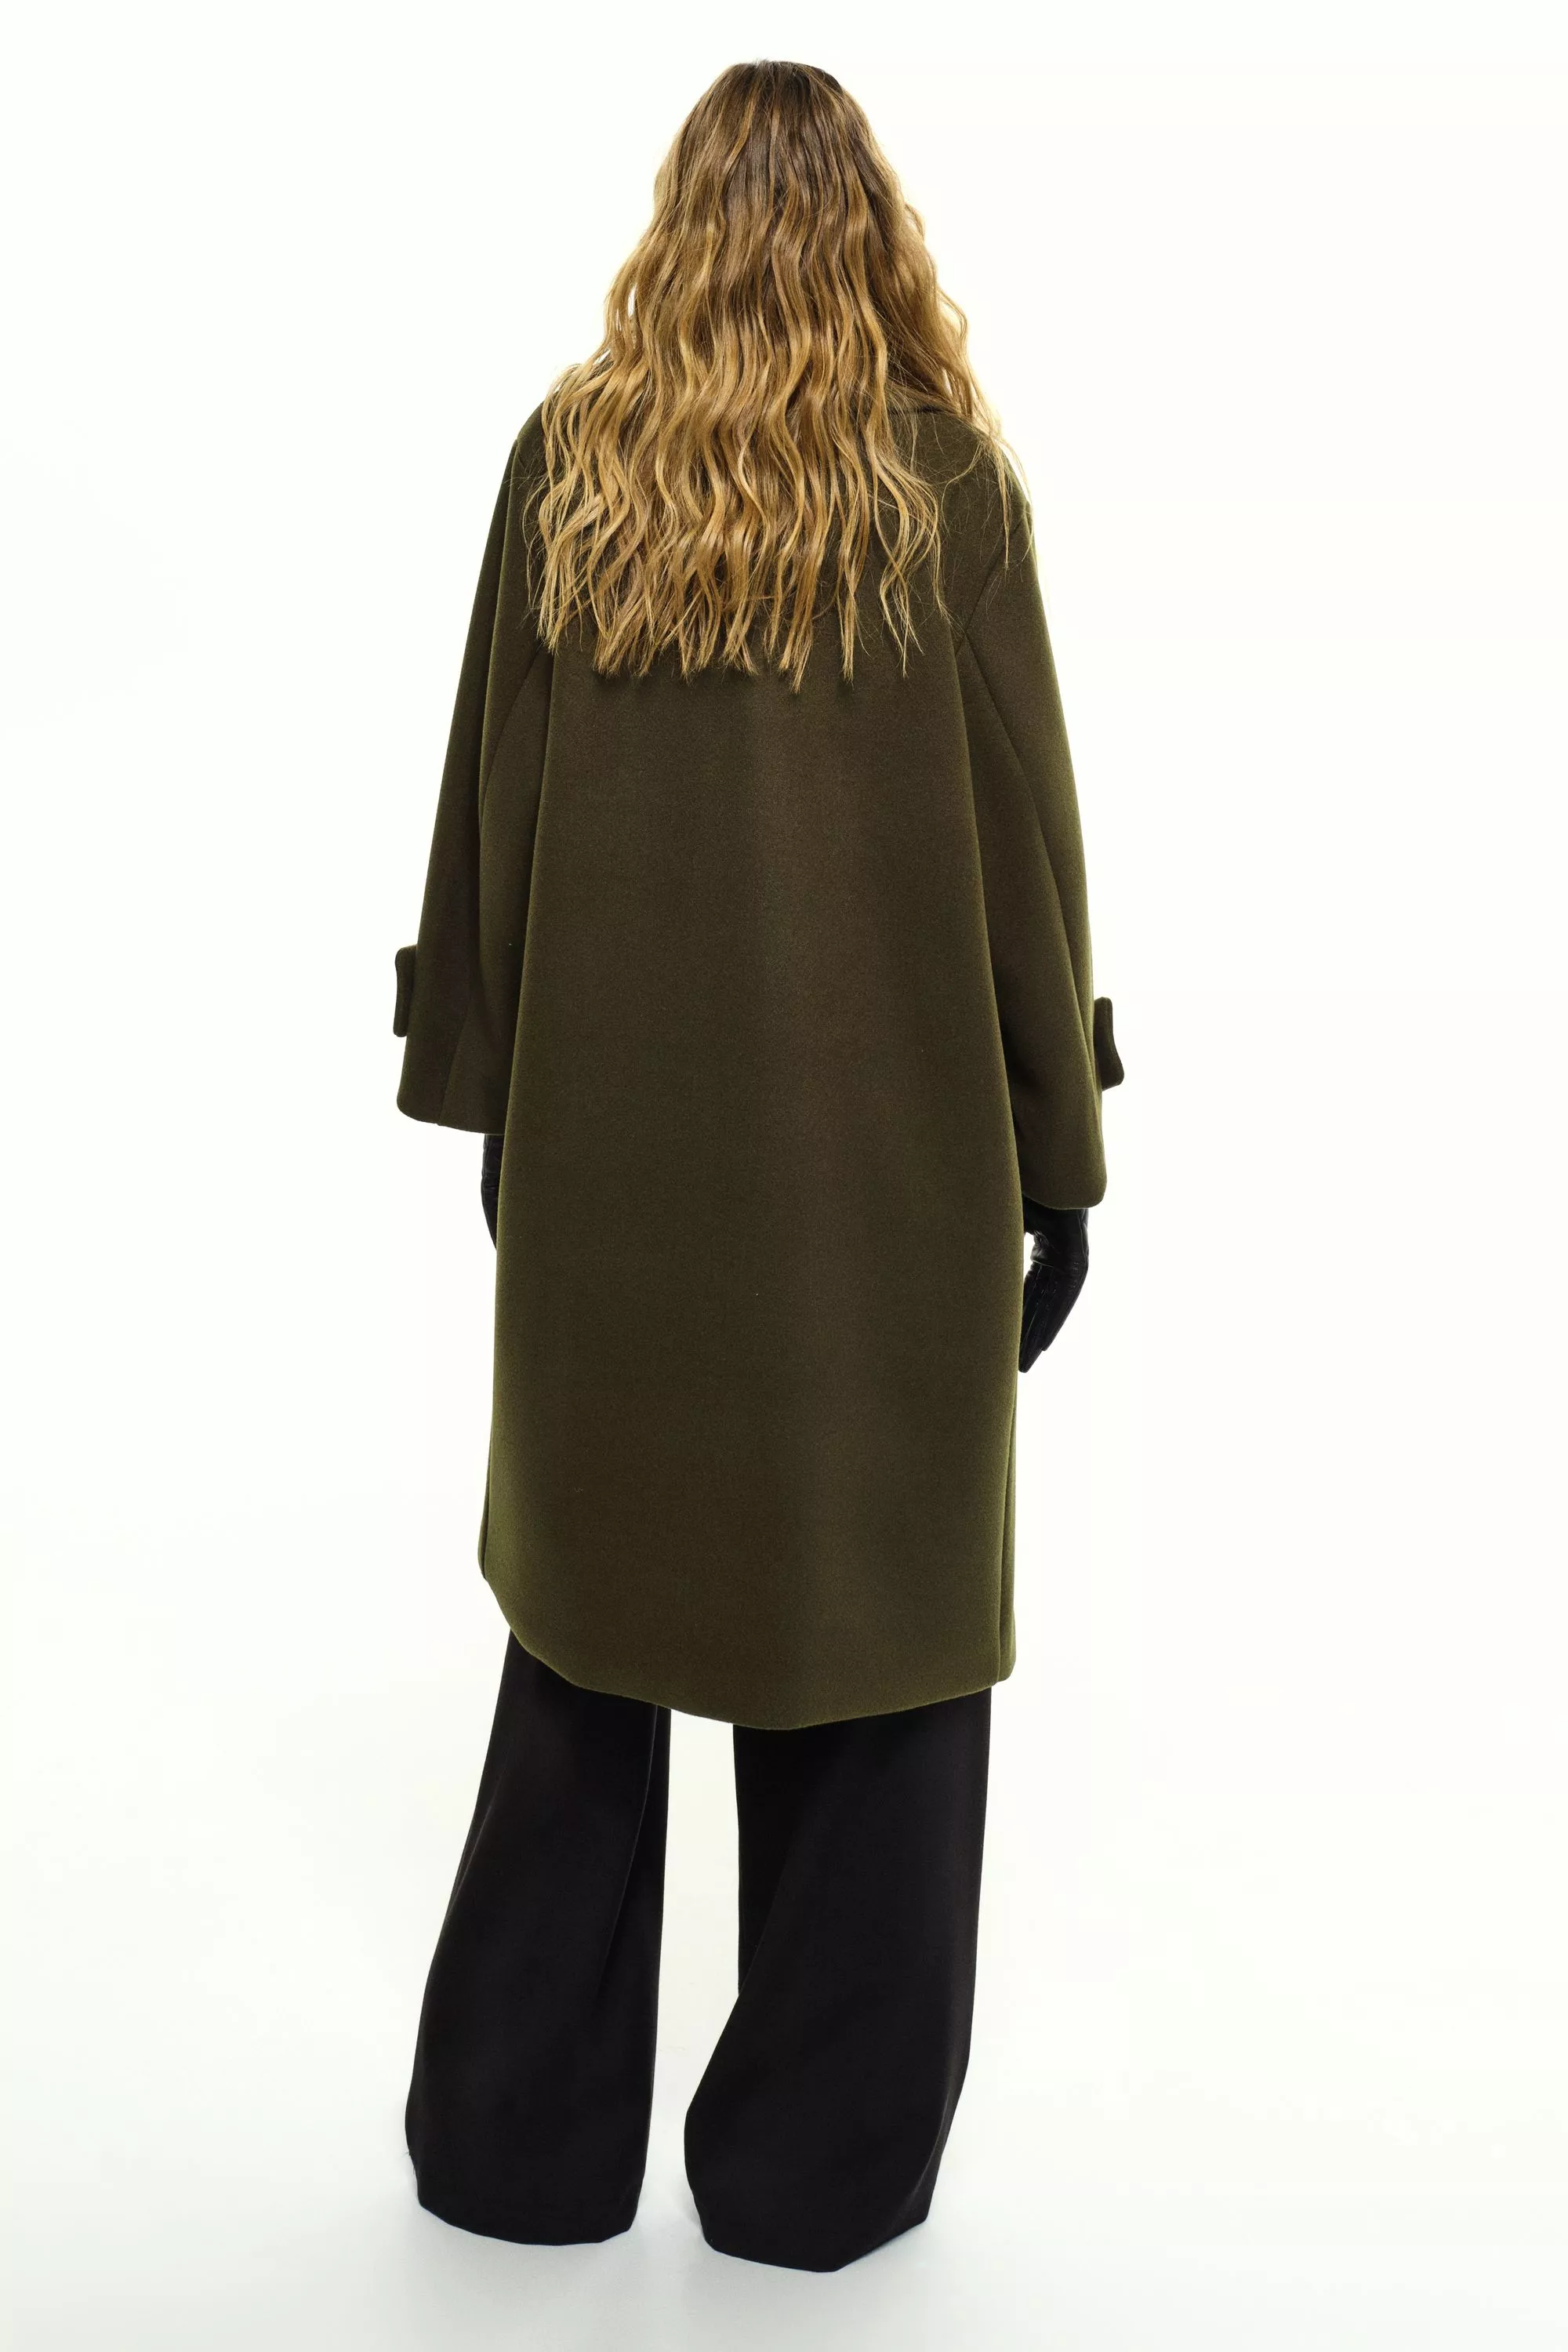 Damen Zweireihiger Mantel in Oliv von Ricano, Rückansicht am Model